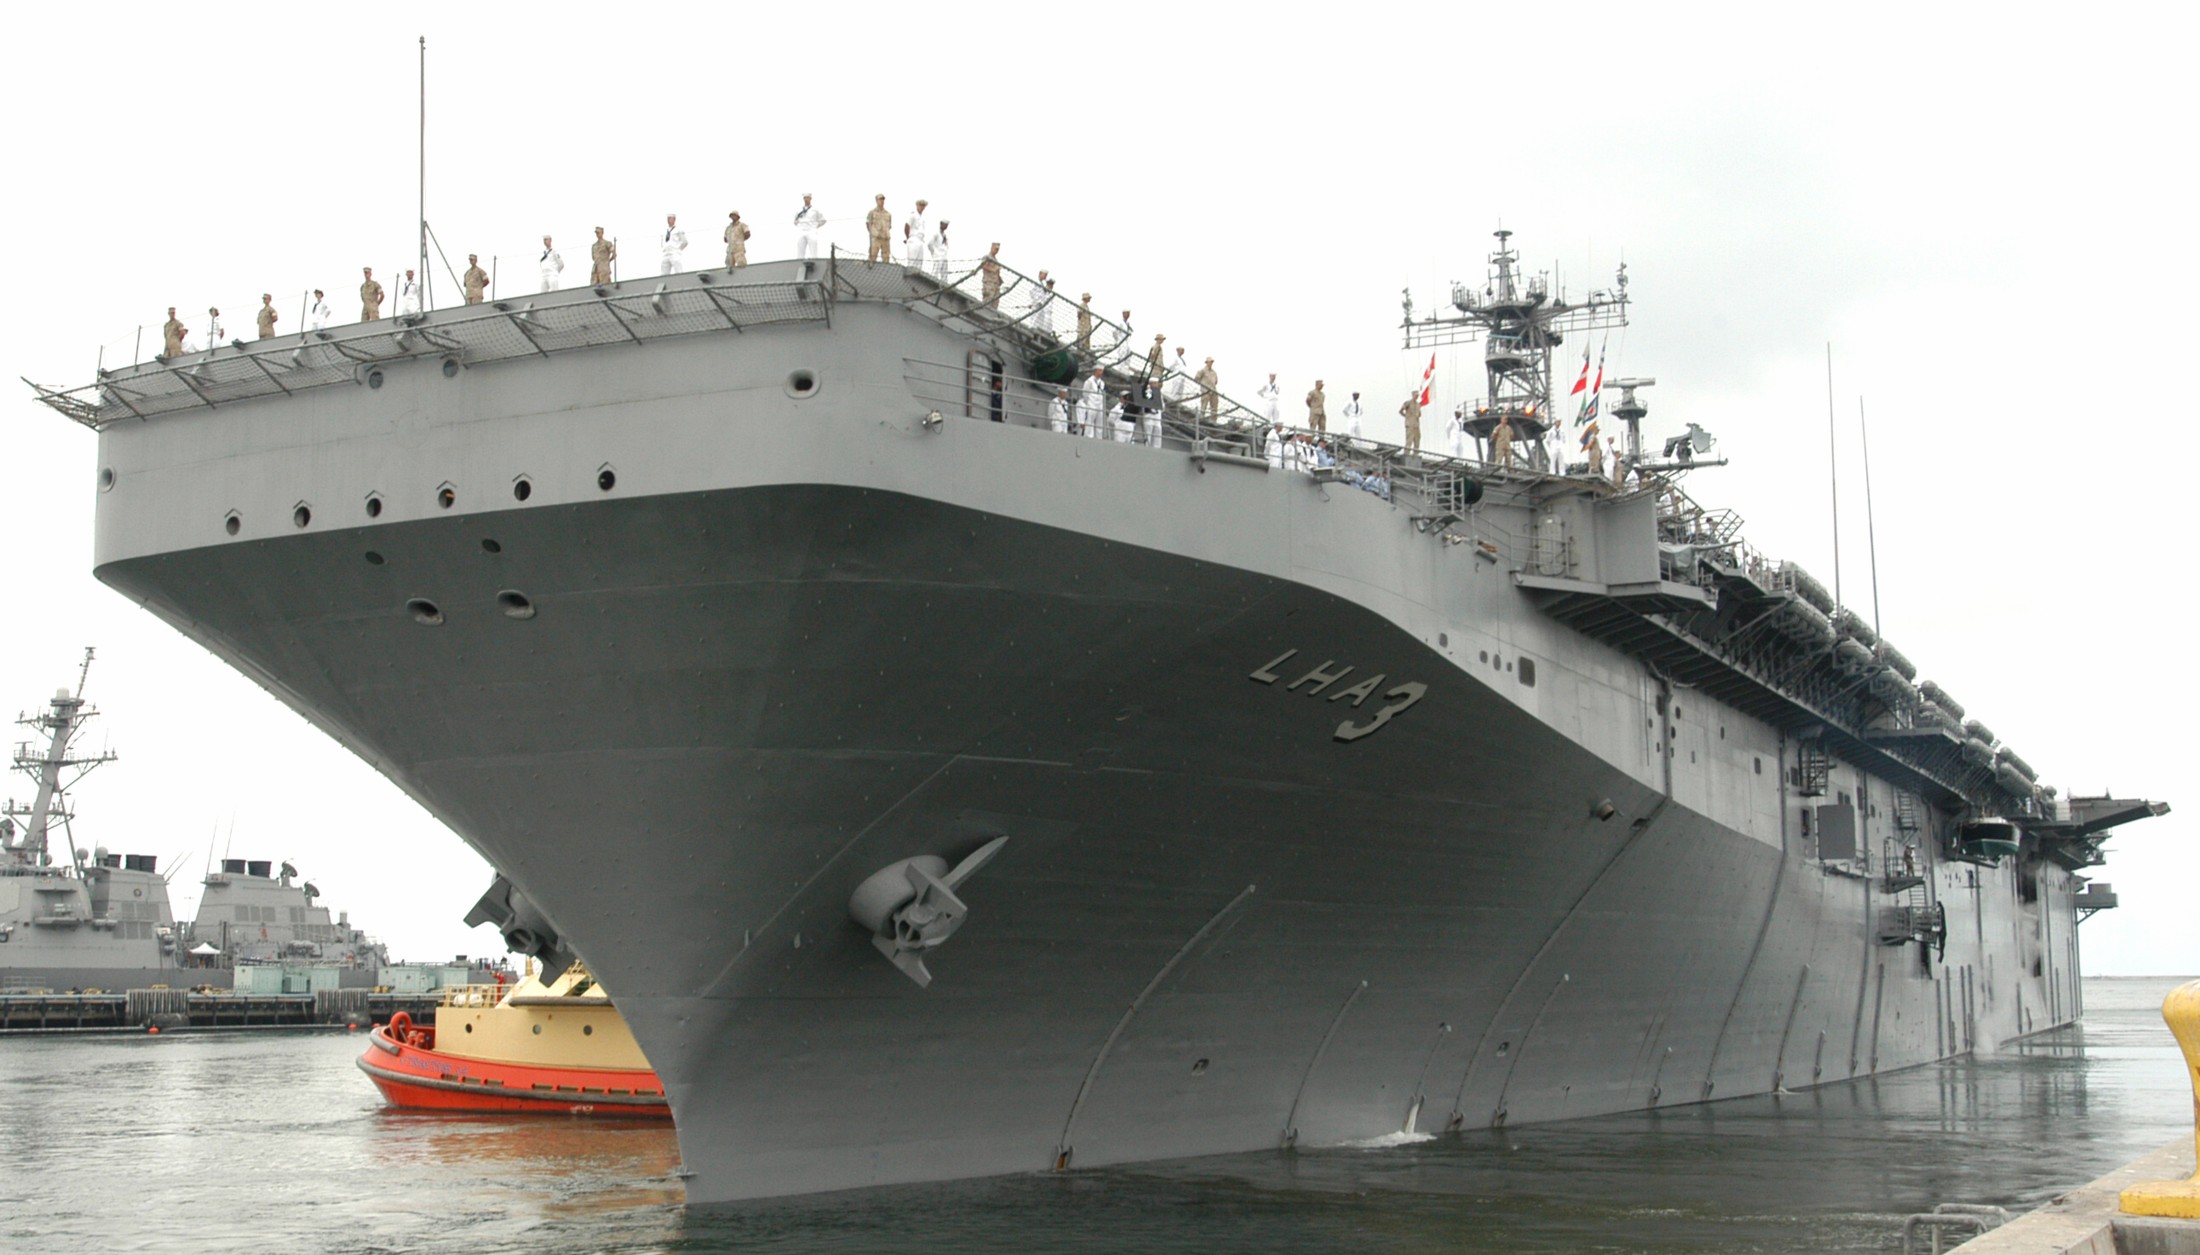 lha-3 uss belleau wood tarawa class amphibious assault ship us navy 06